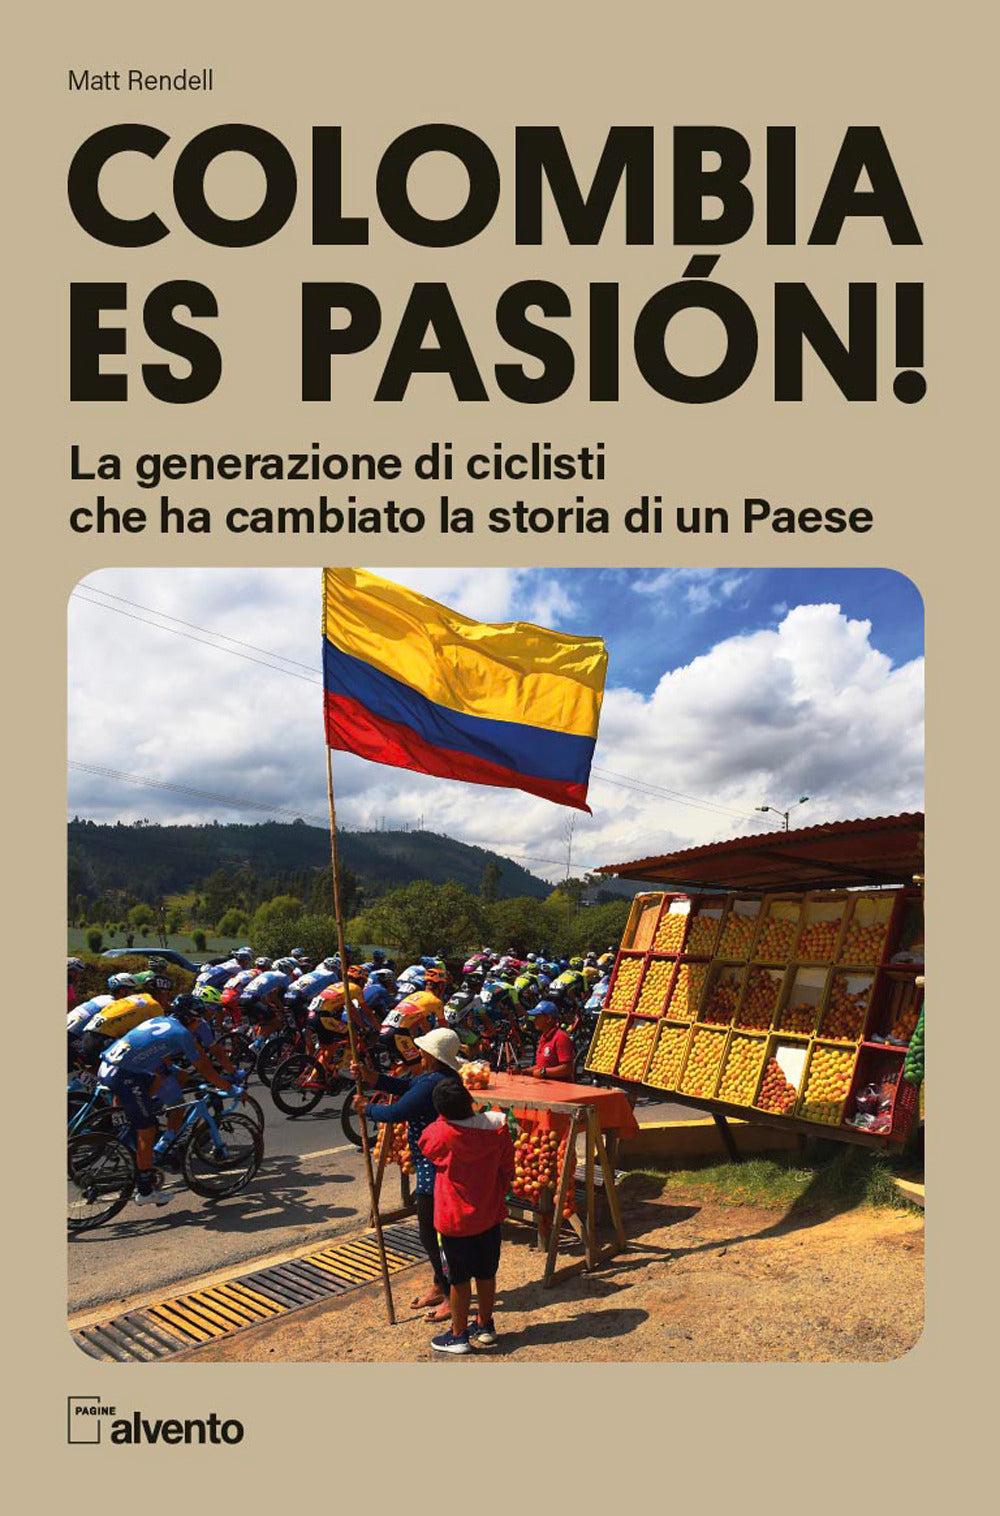 Colombia es pasión! La generazione di ciclisti che ha cambiato la storia di un Paese.